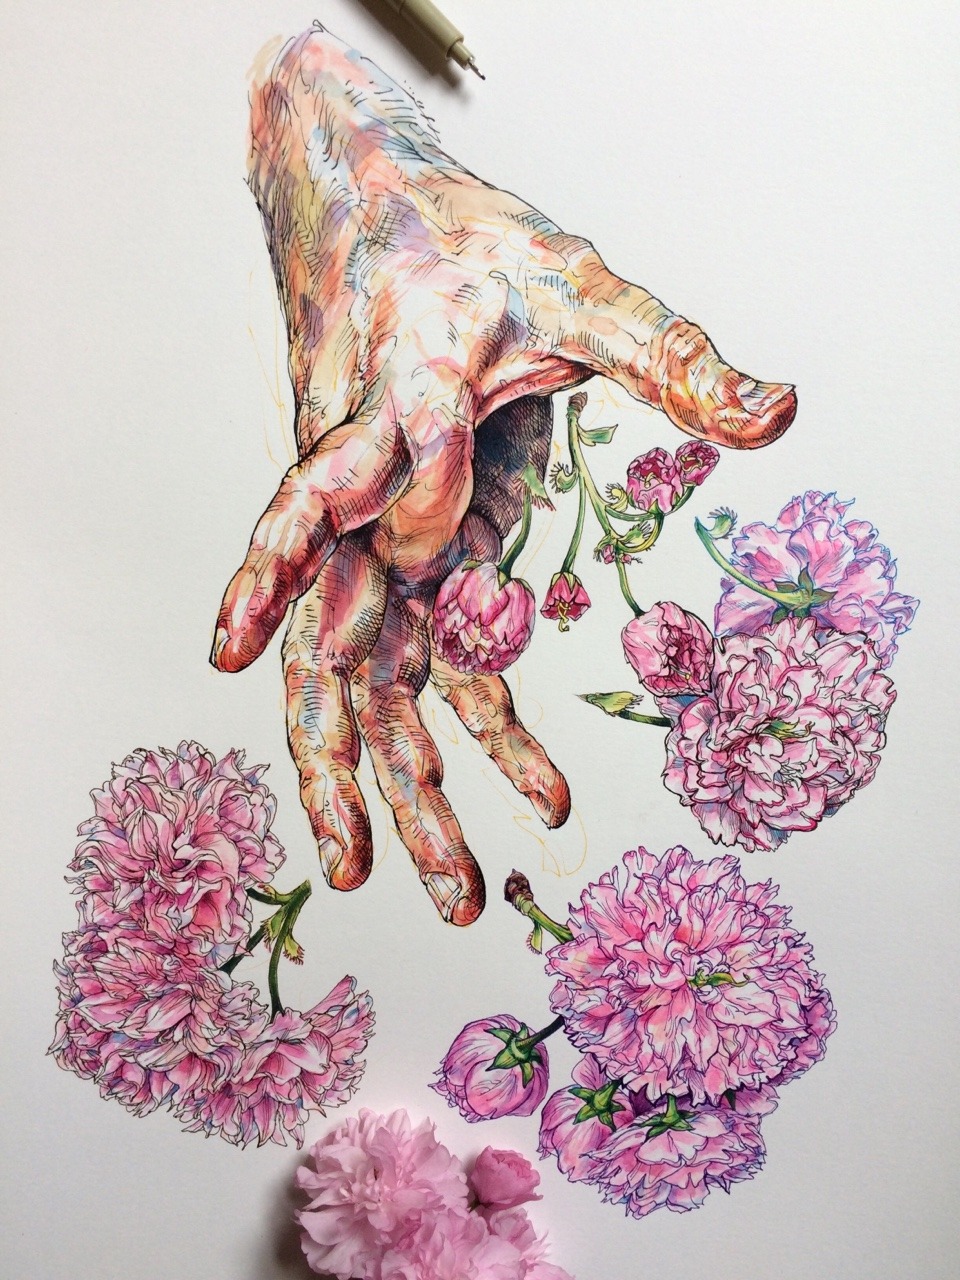 Blumen und Hände in der Kunst von Noel Badget Pugh